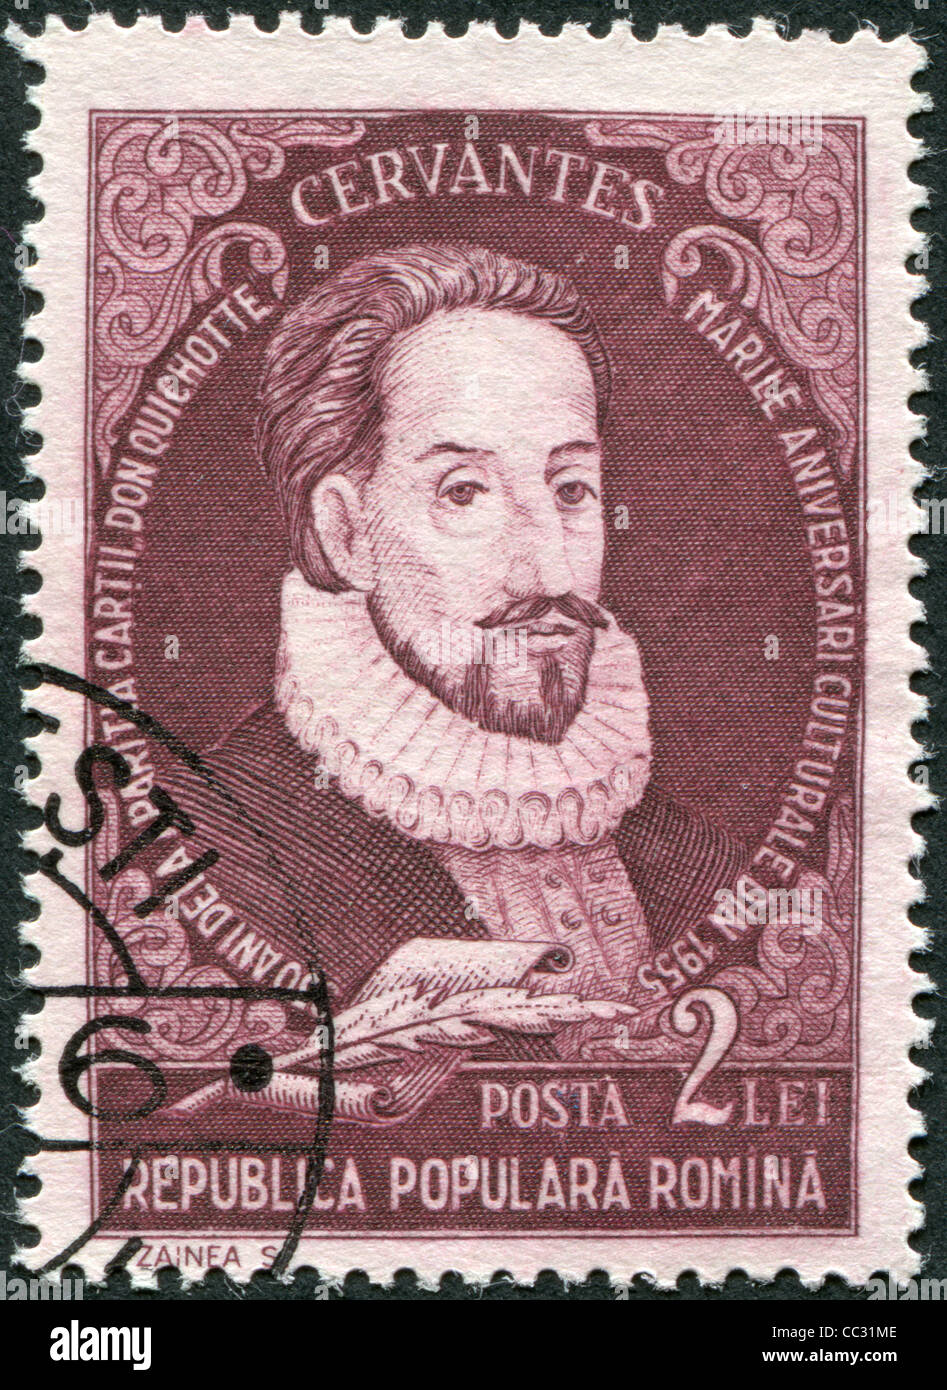 ROMANIA - CIRCA 1982: A stamp printed in the Romania, shows the Miguel de Cervantes Saavedra, circa 1982 Stock Photo